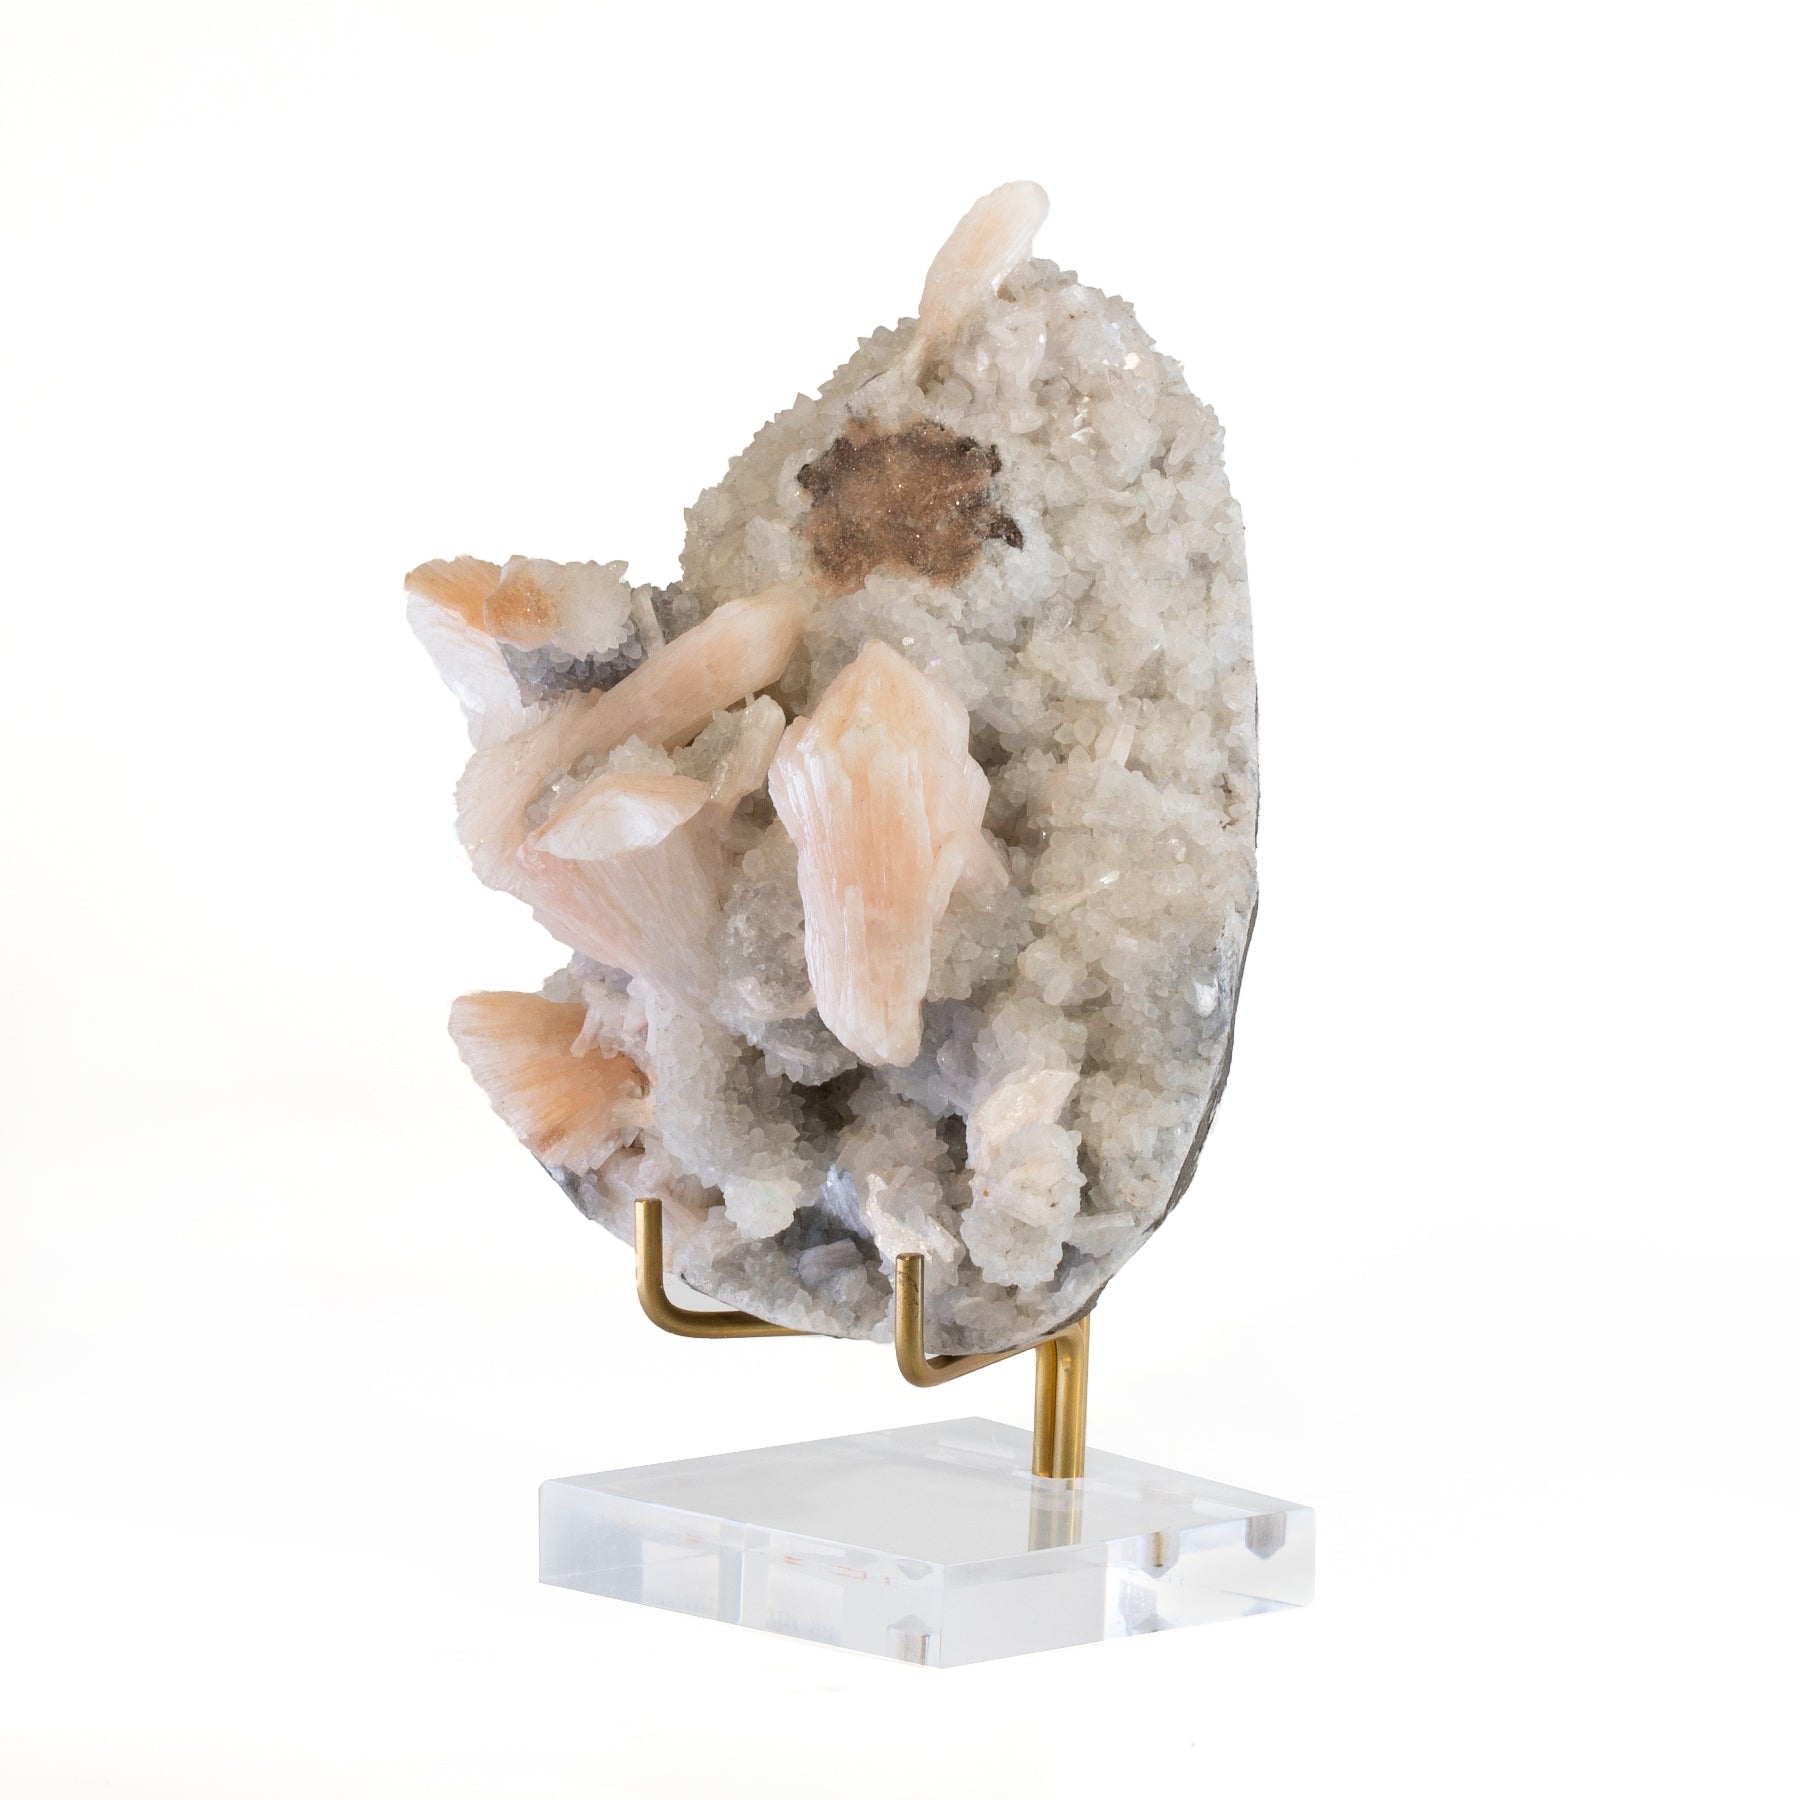 Heulandite and Stilbite 5.2 inch 1.54lb Natural Crystal Specimen - India - YX-549 - Crystalarium